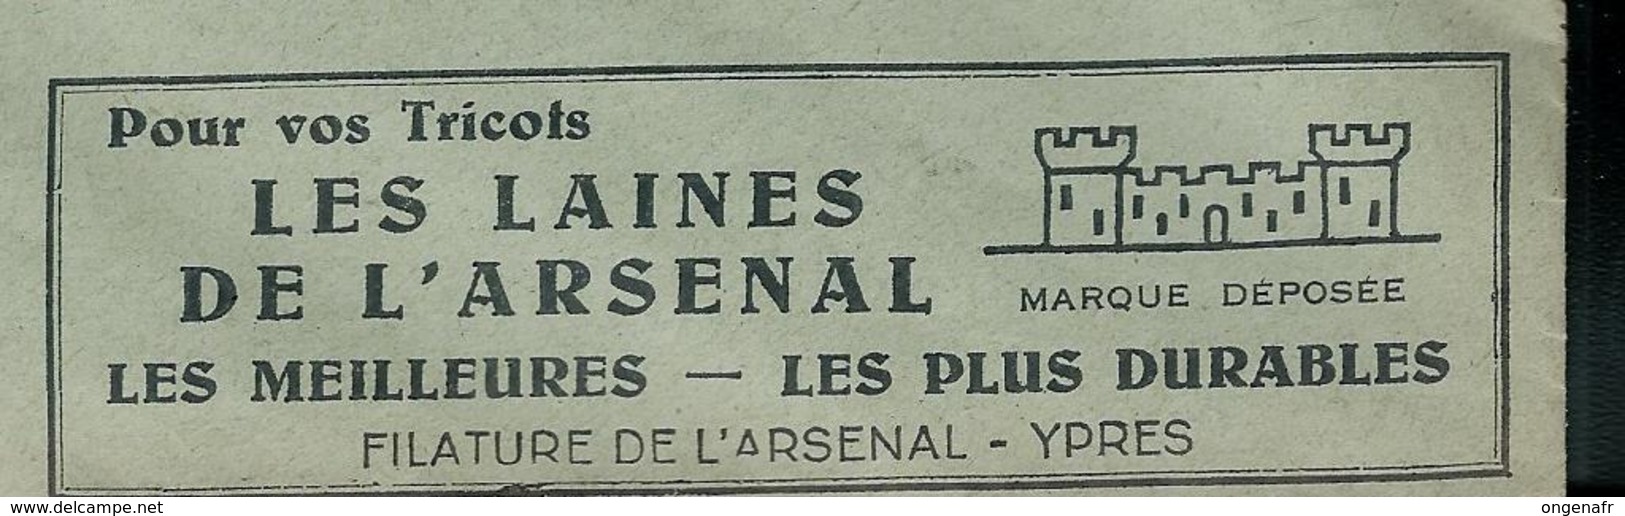 Belgique:  Tricots - Les Laines De L'Arsenal - Ypres    ----machines à écrire SM  Obl. 31/03/1936 - Usines & Industries